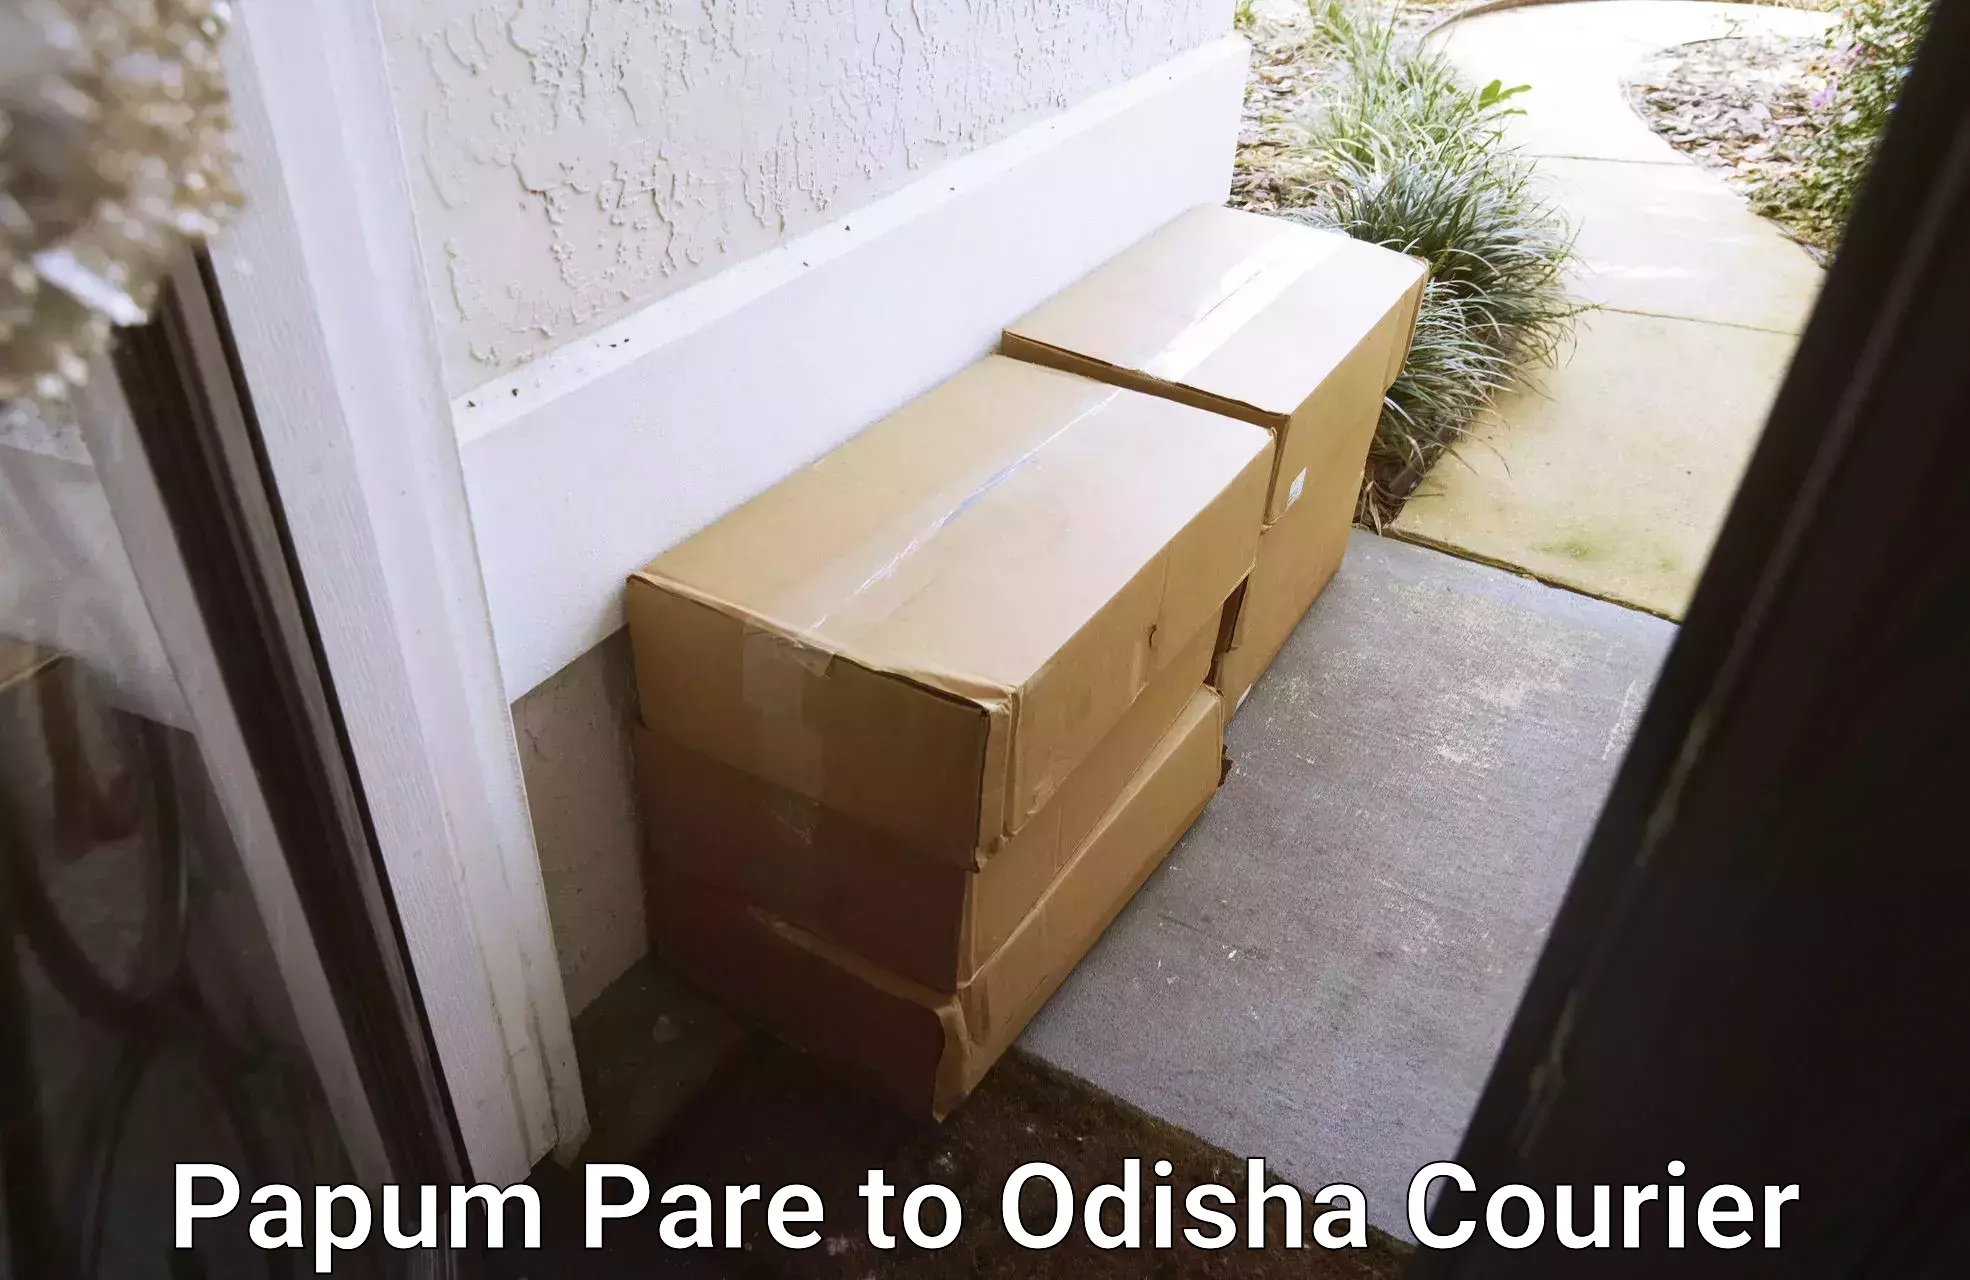 Courier service comparison Papum Pare to Odisha